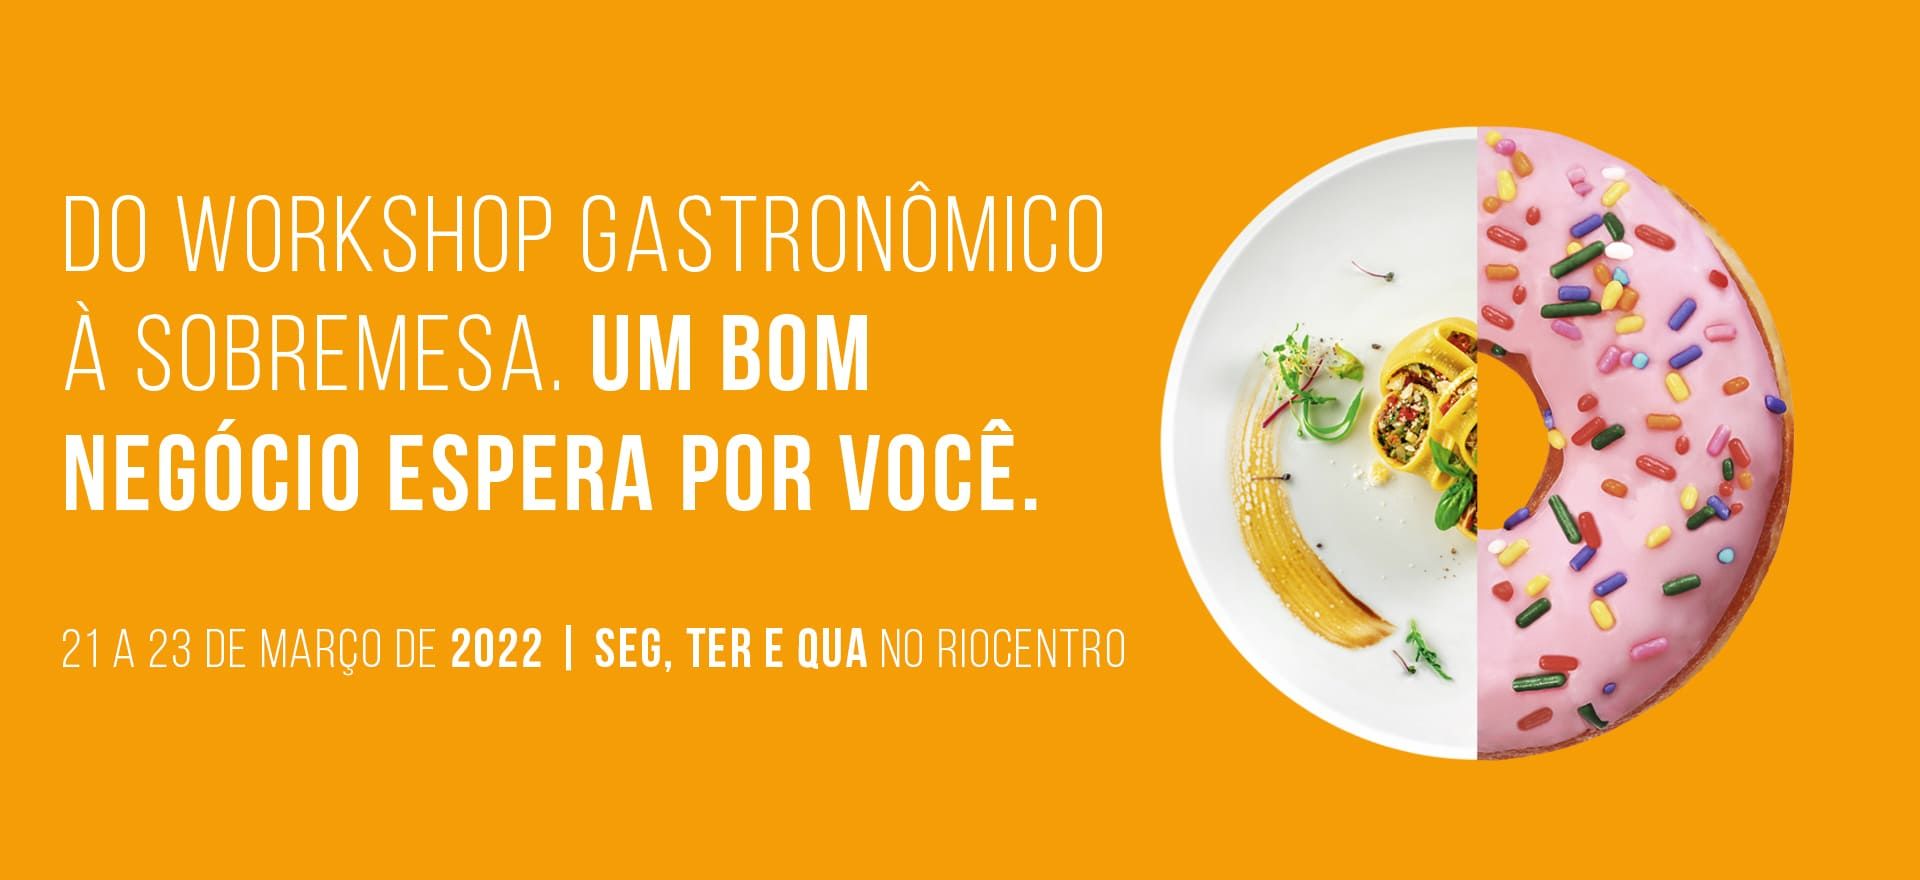 Cartaz amarelo com texto sobre a feira Super Rio ExpoFood e imagem de meio prato de alta gastronomia e meio donut.